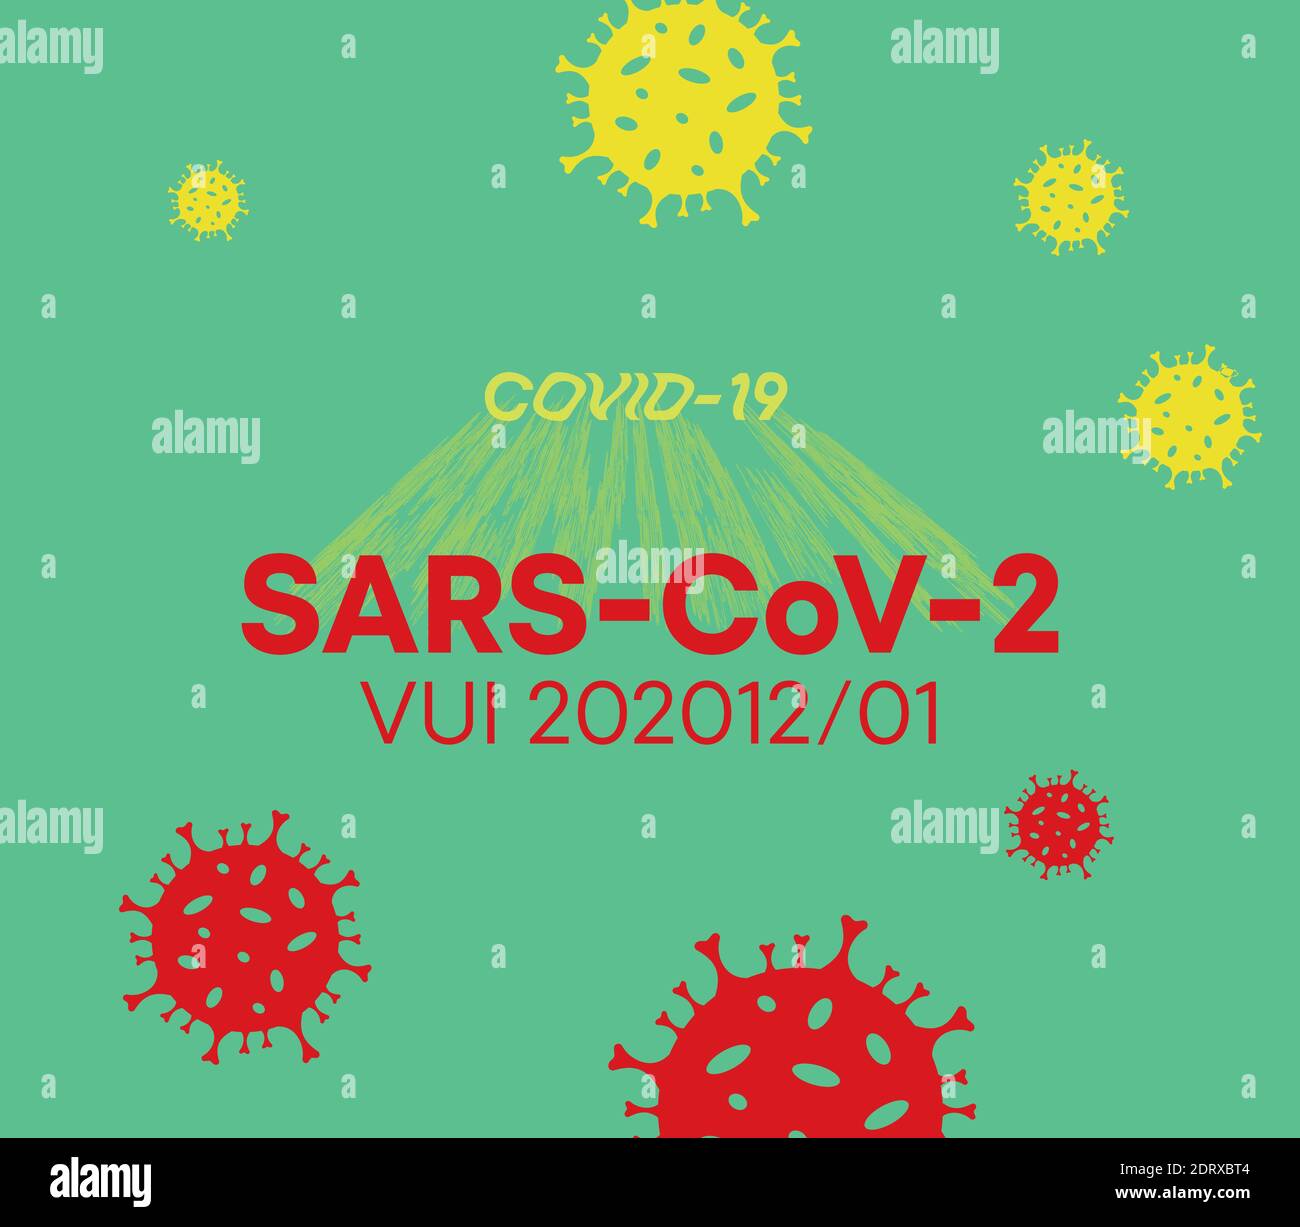 SARS-CoV-2. Mortal brote global de coronavirus SARS-CoV-2. Póster con concepto de pandemia y alerta de coronavirus COVID 19. Virus recién formado. Ilustración del Vector